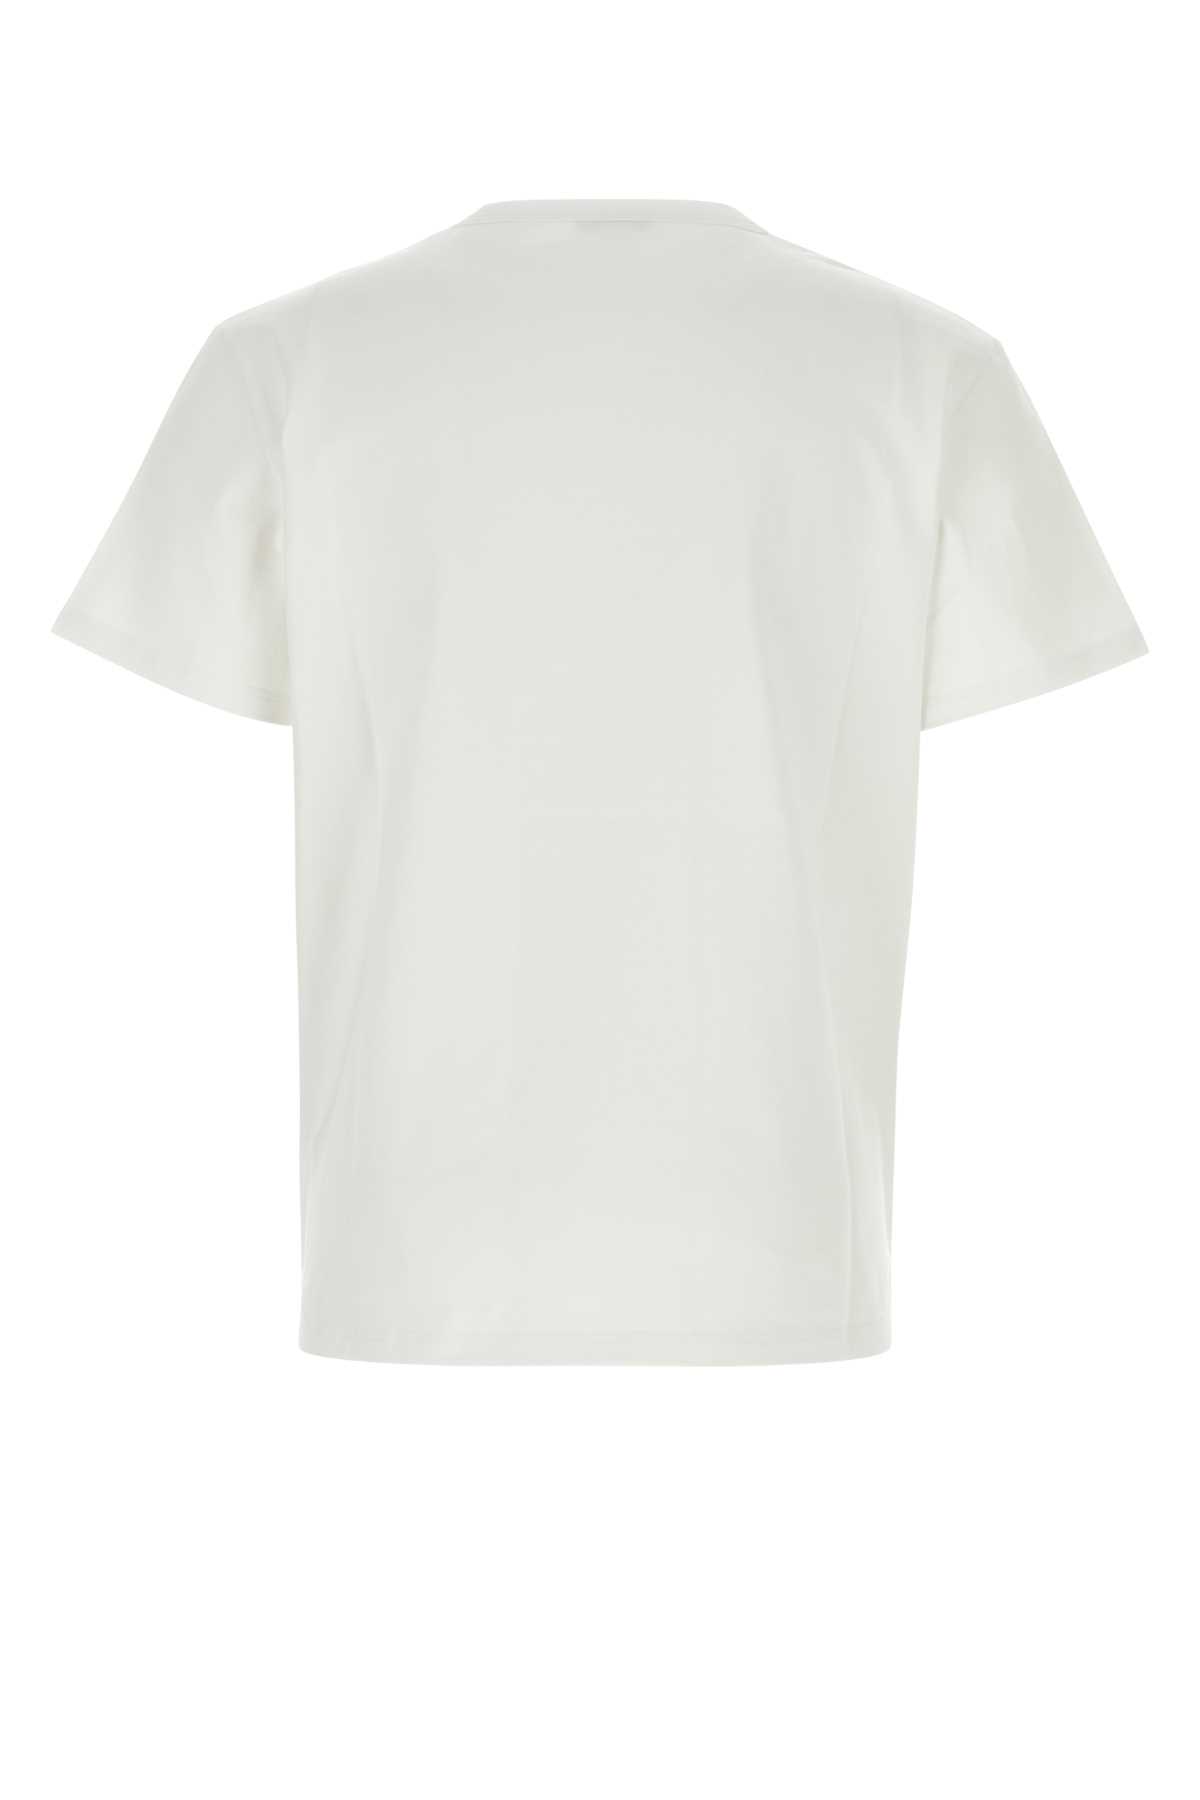 Alexander Mcqueen White Cotton T-shirt In Whitewhiteblack